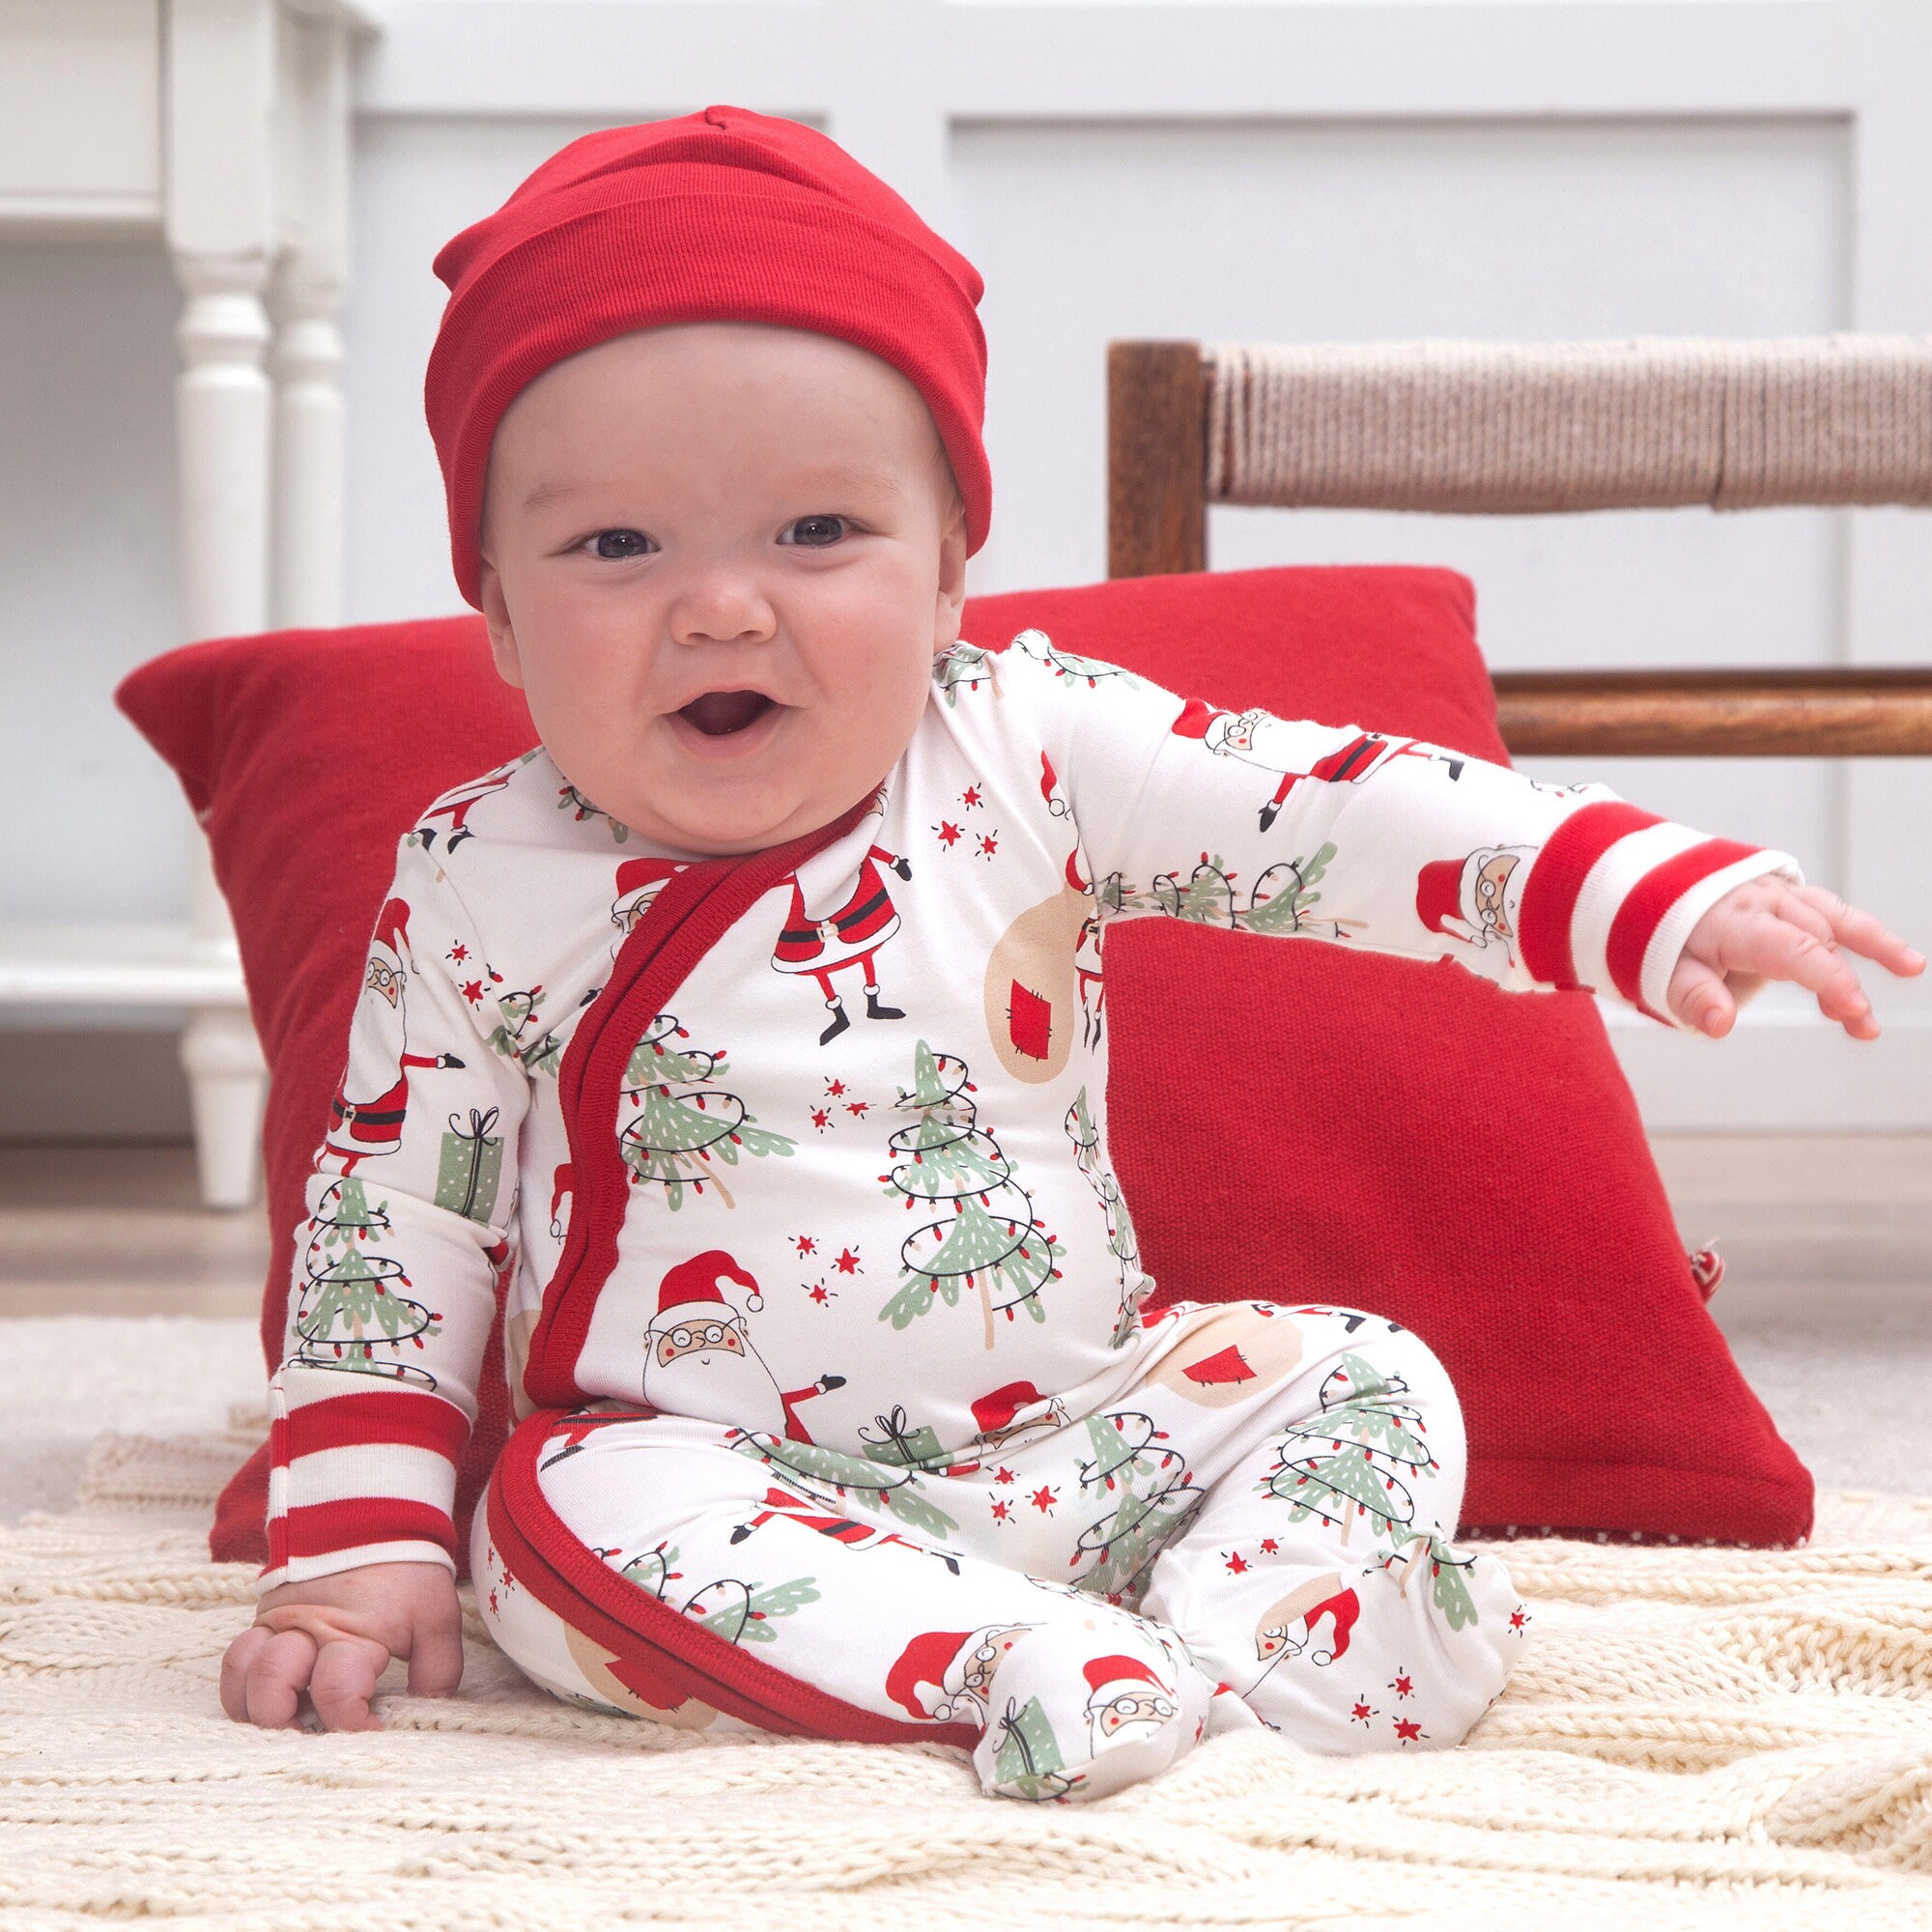 Pijama recién nacido niña, ideal para primeros días del hospital - Bamboo